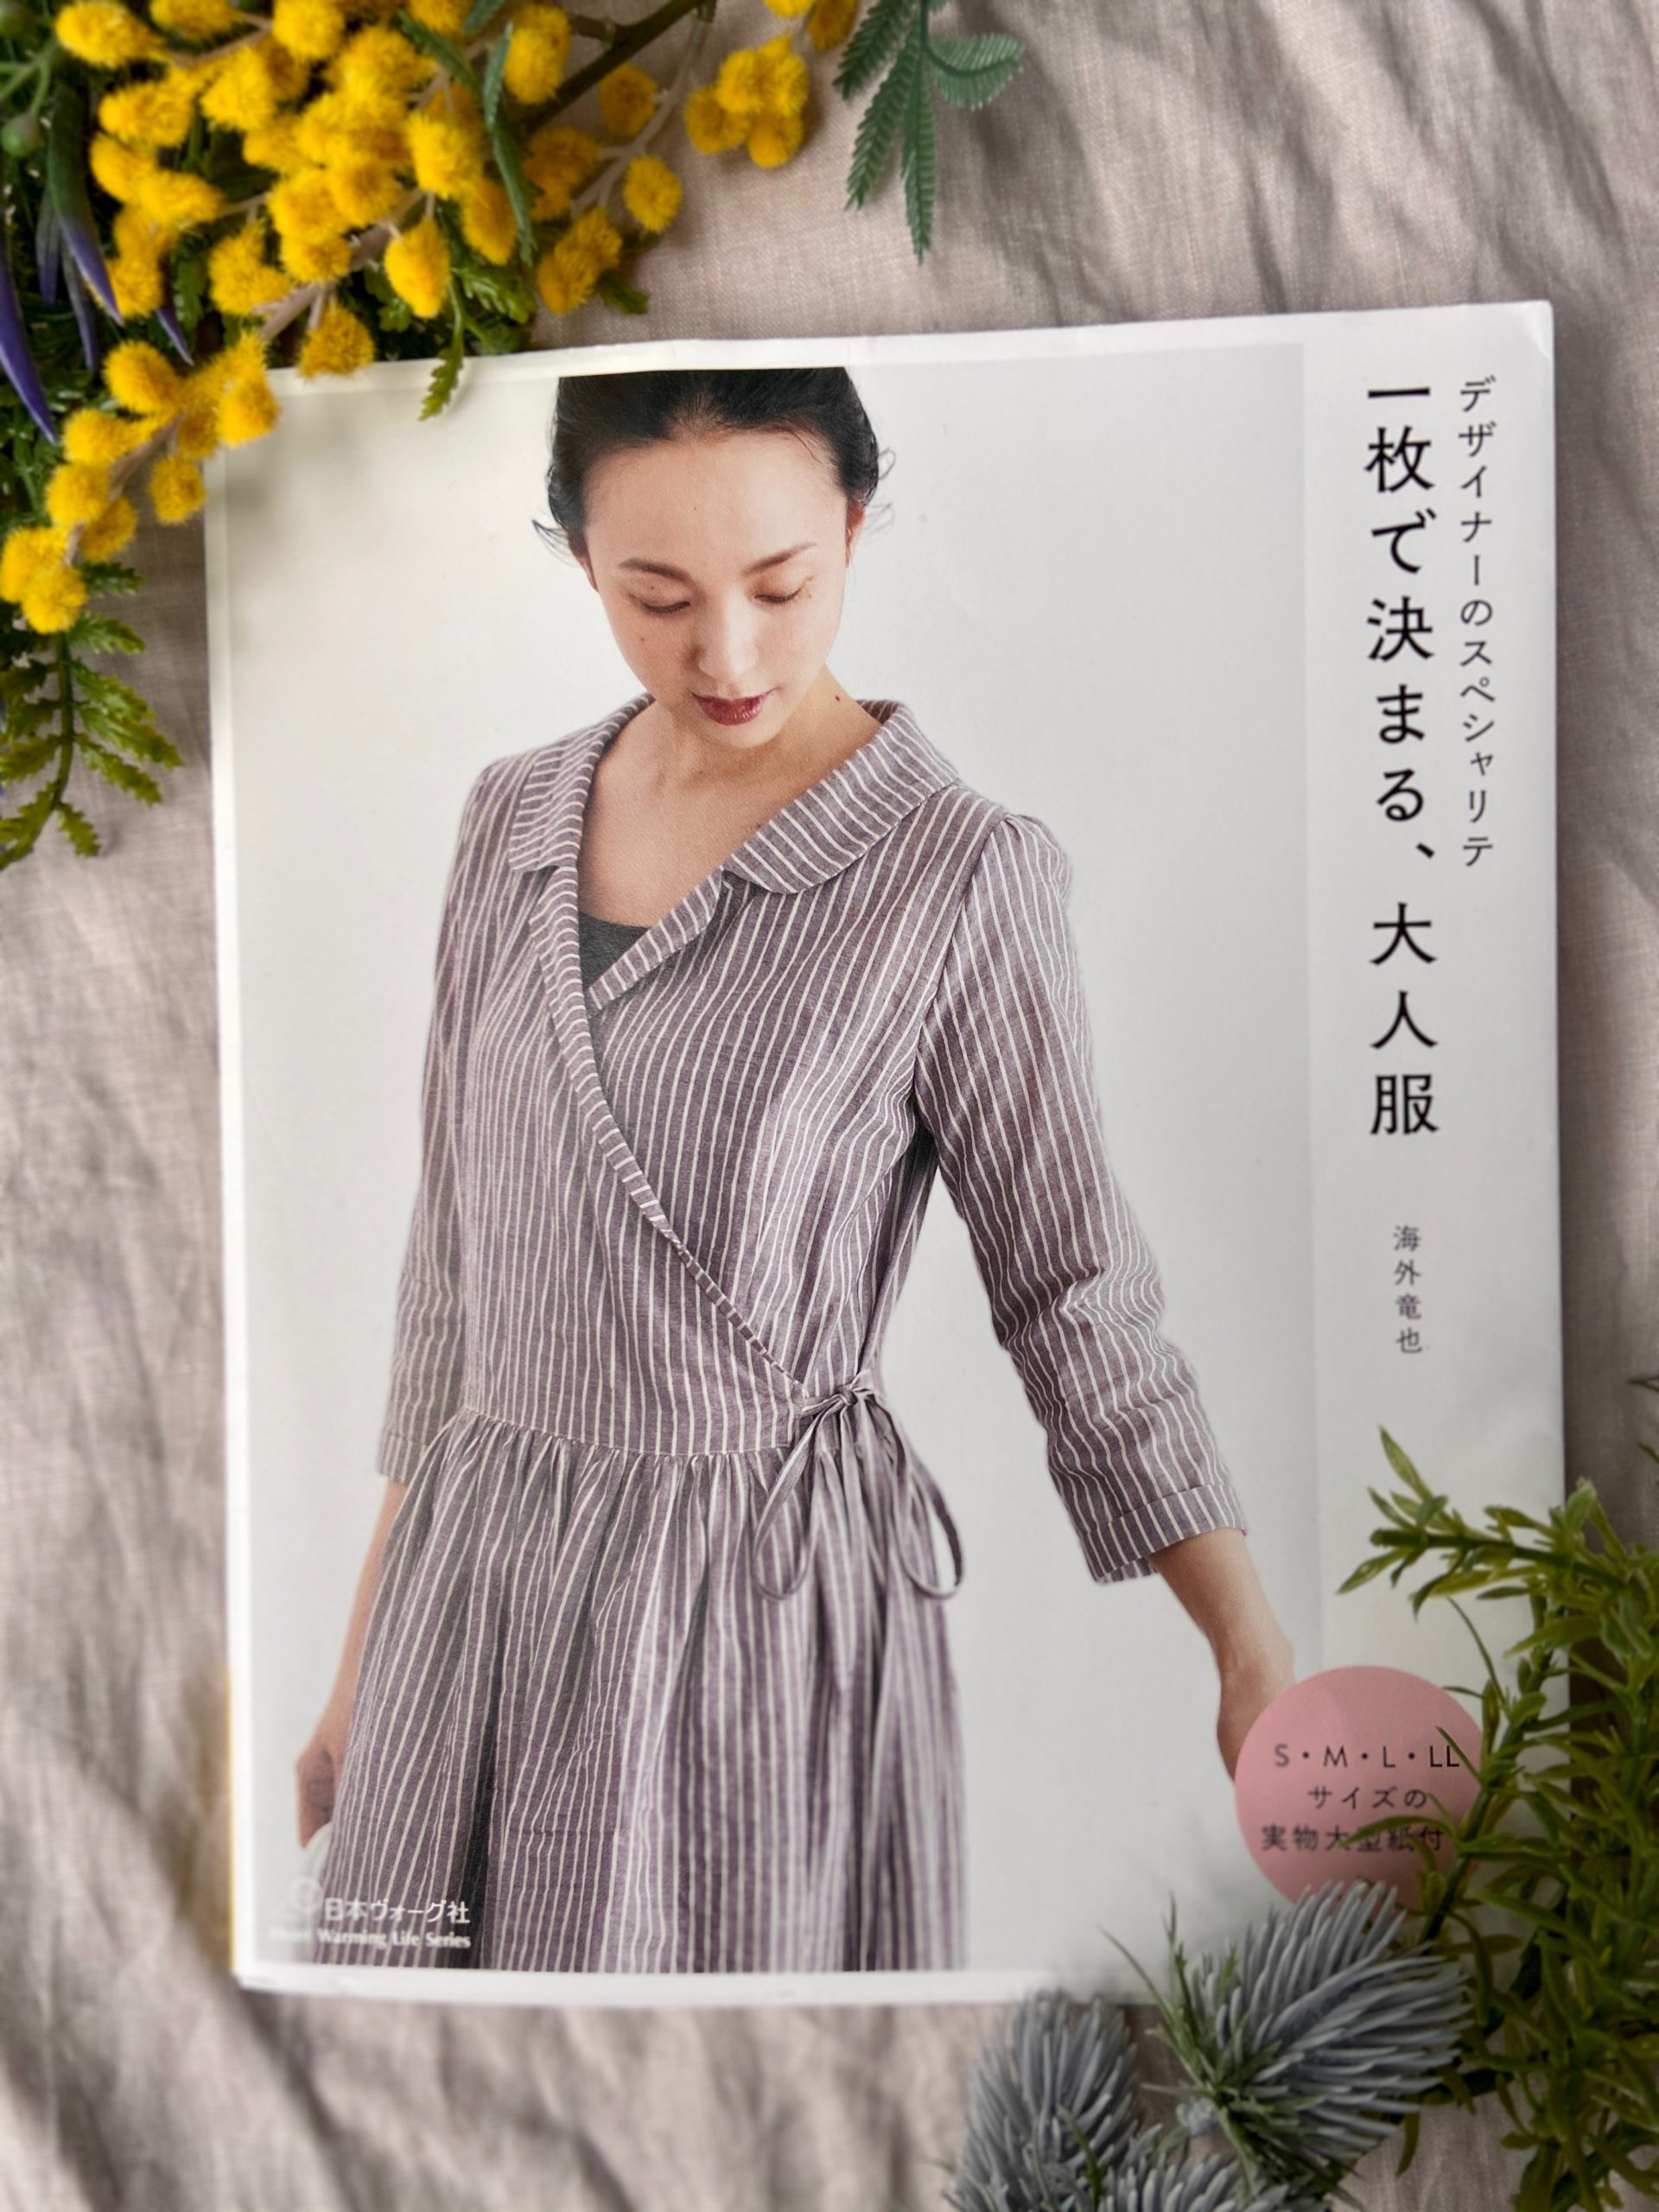 海外竜也さんの新刊「デザイナーのスペシャリテ 一枚で決まる、大人服」【今年ナンバーワン？！】 - Dressmaking Days